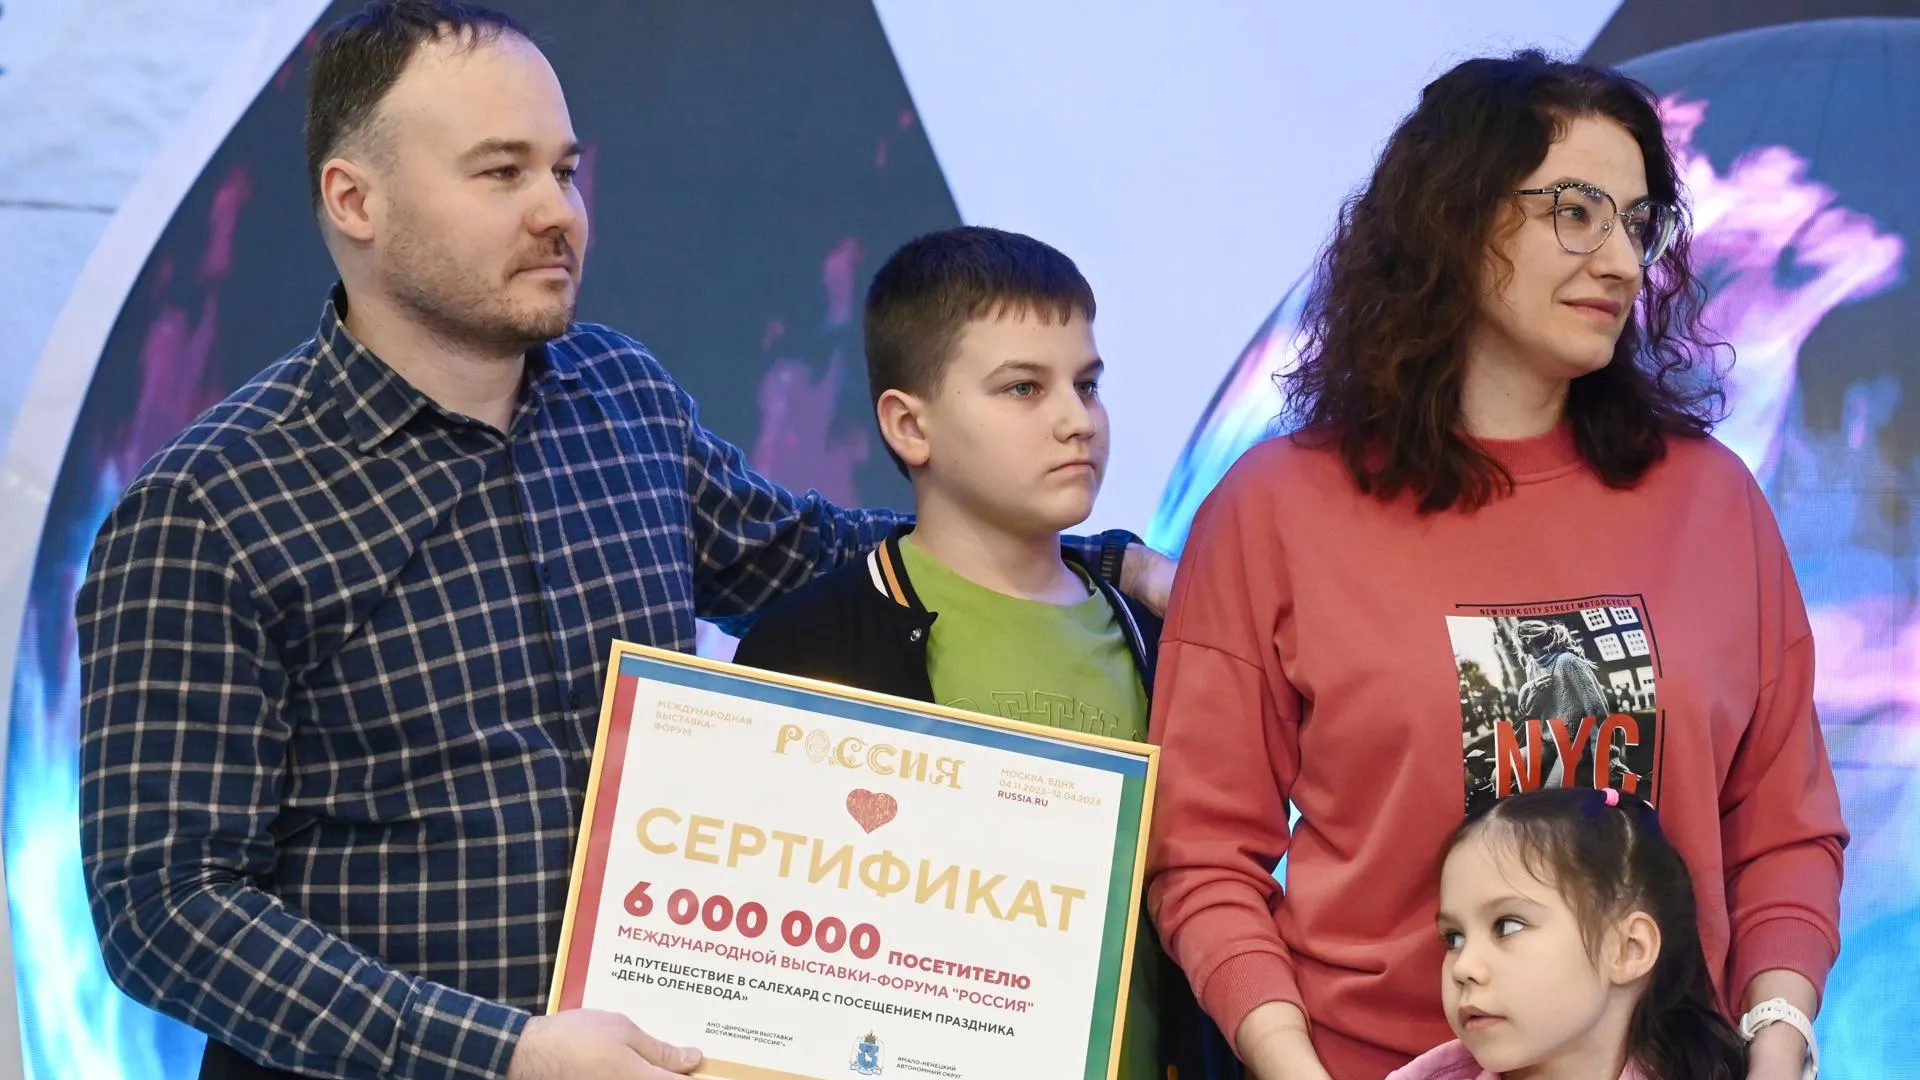 6 млн человек посетили выставку‑форум «Россия» за 3 месяца работы